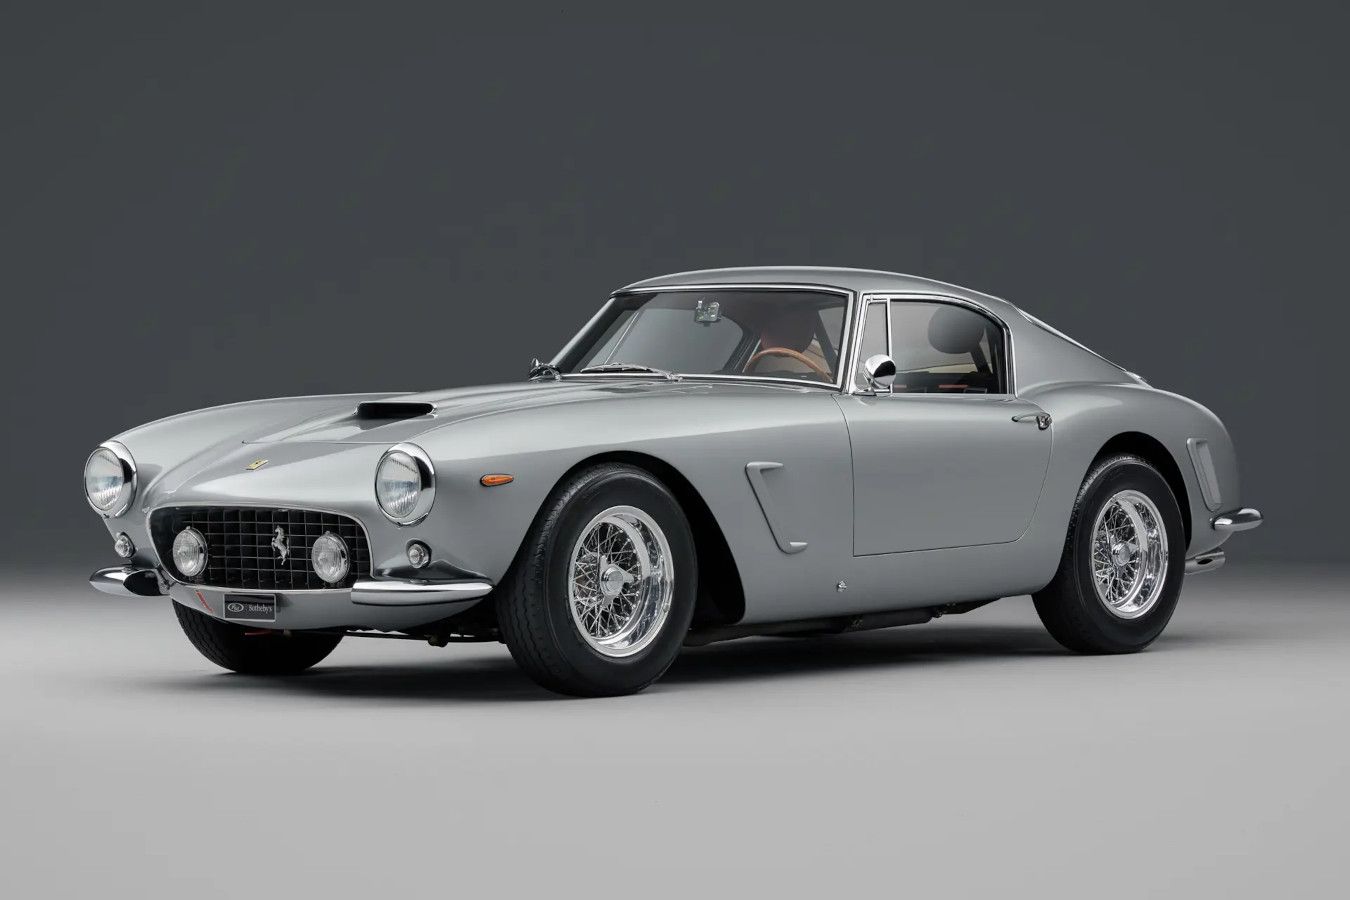 Редкая Ferrari 1960 года выставлена на аукцион. За неё хотят больше $ 7 млн